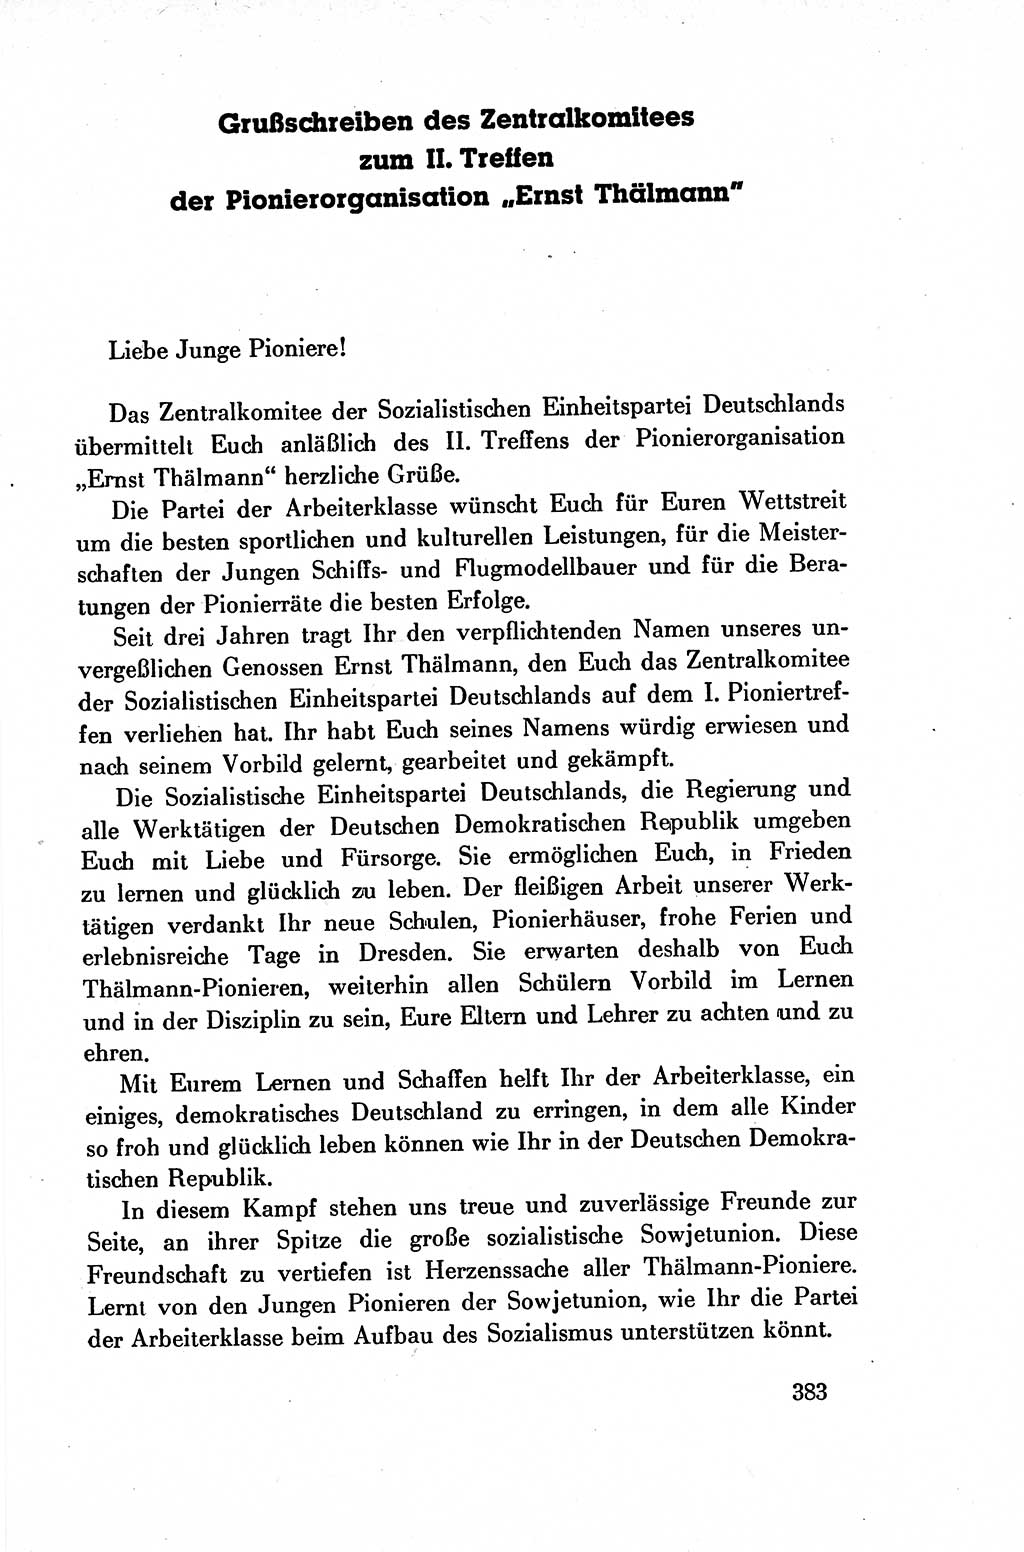 Dokumente der Sozialistischen Einheitspartei Deutschlands (SED) [Deutsche Demokratische Republik (DDR)] 1954-1955, Seite 383 (Dok. SED DDR 1954-1955, S. 383)